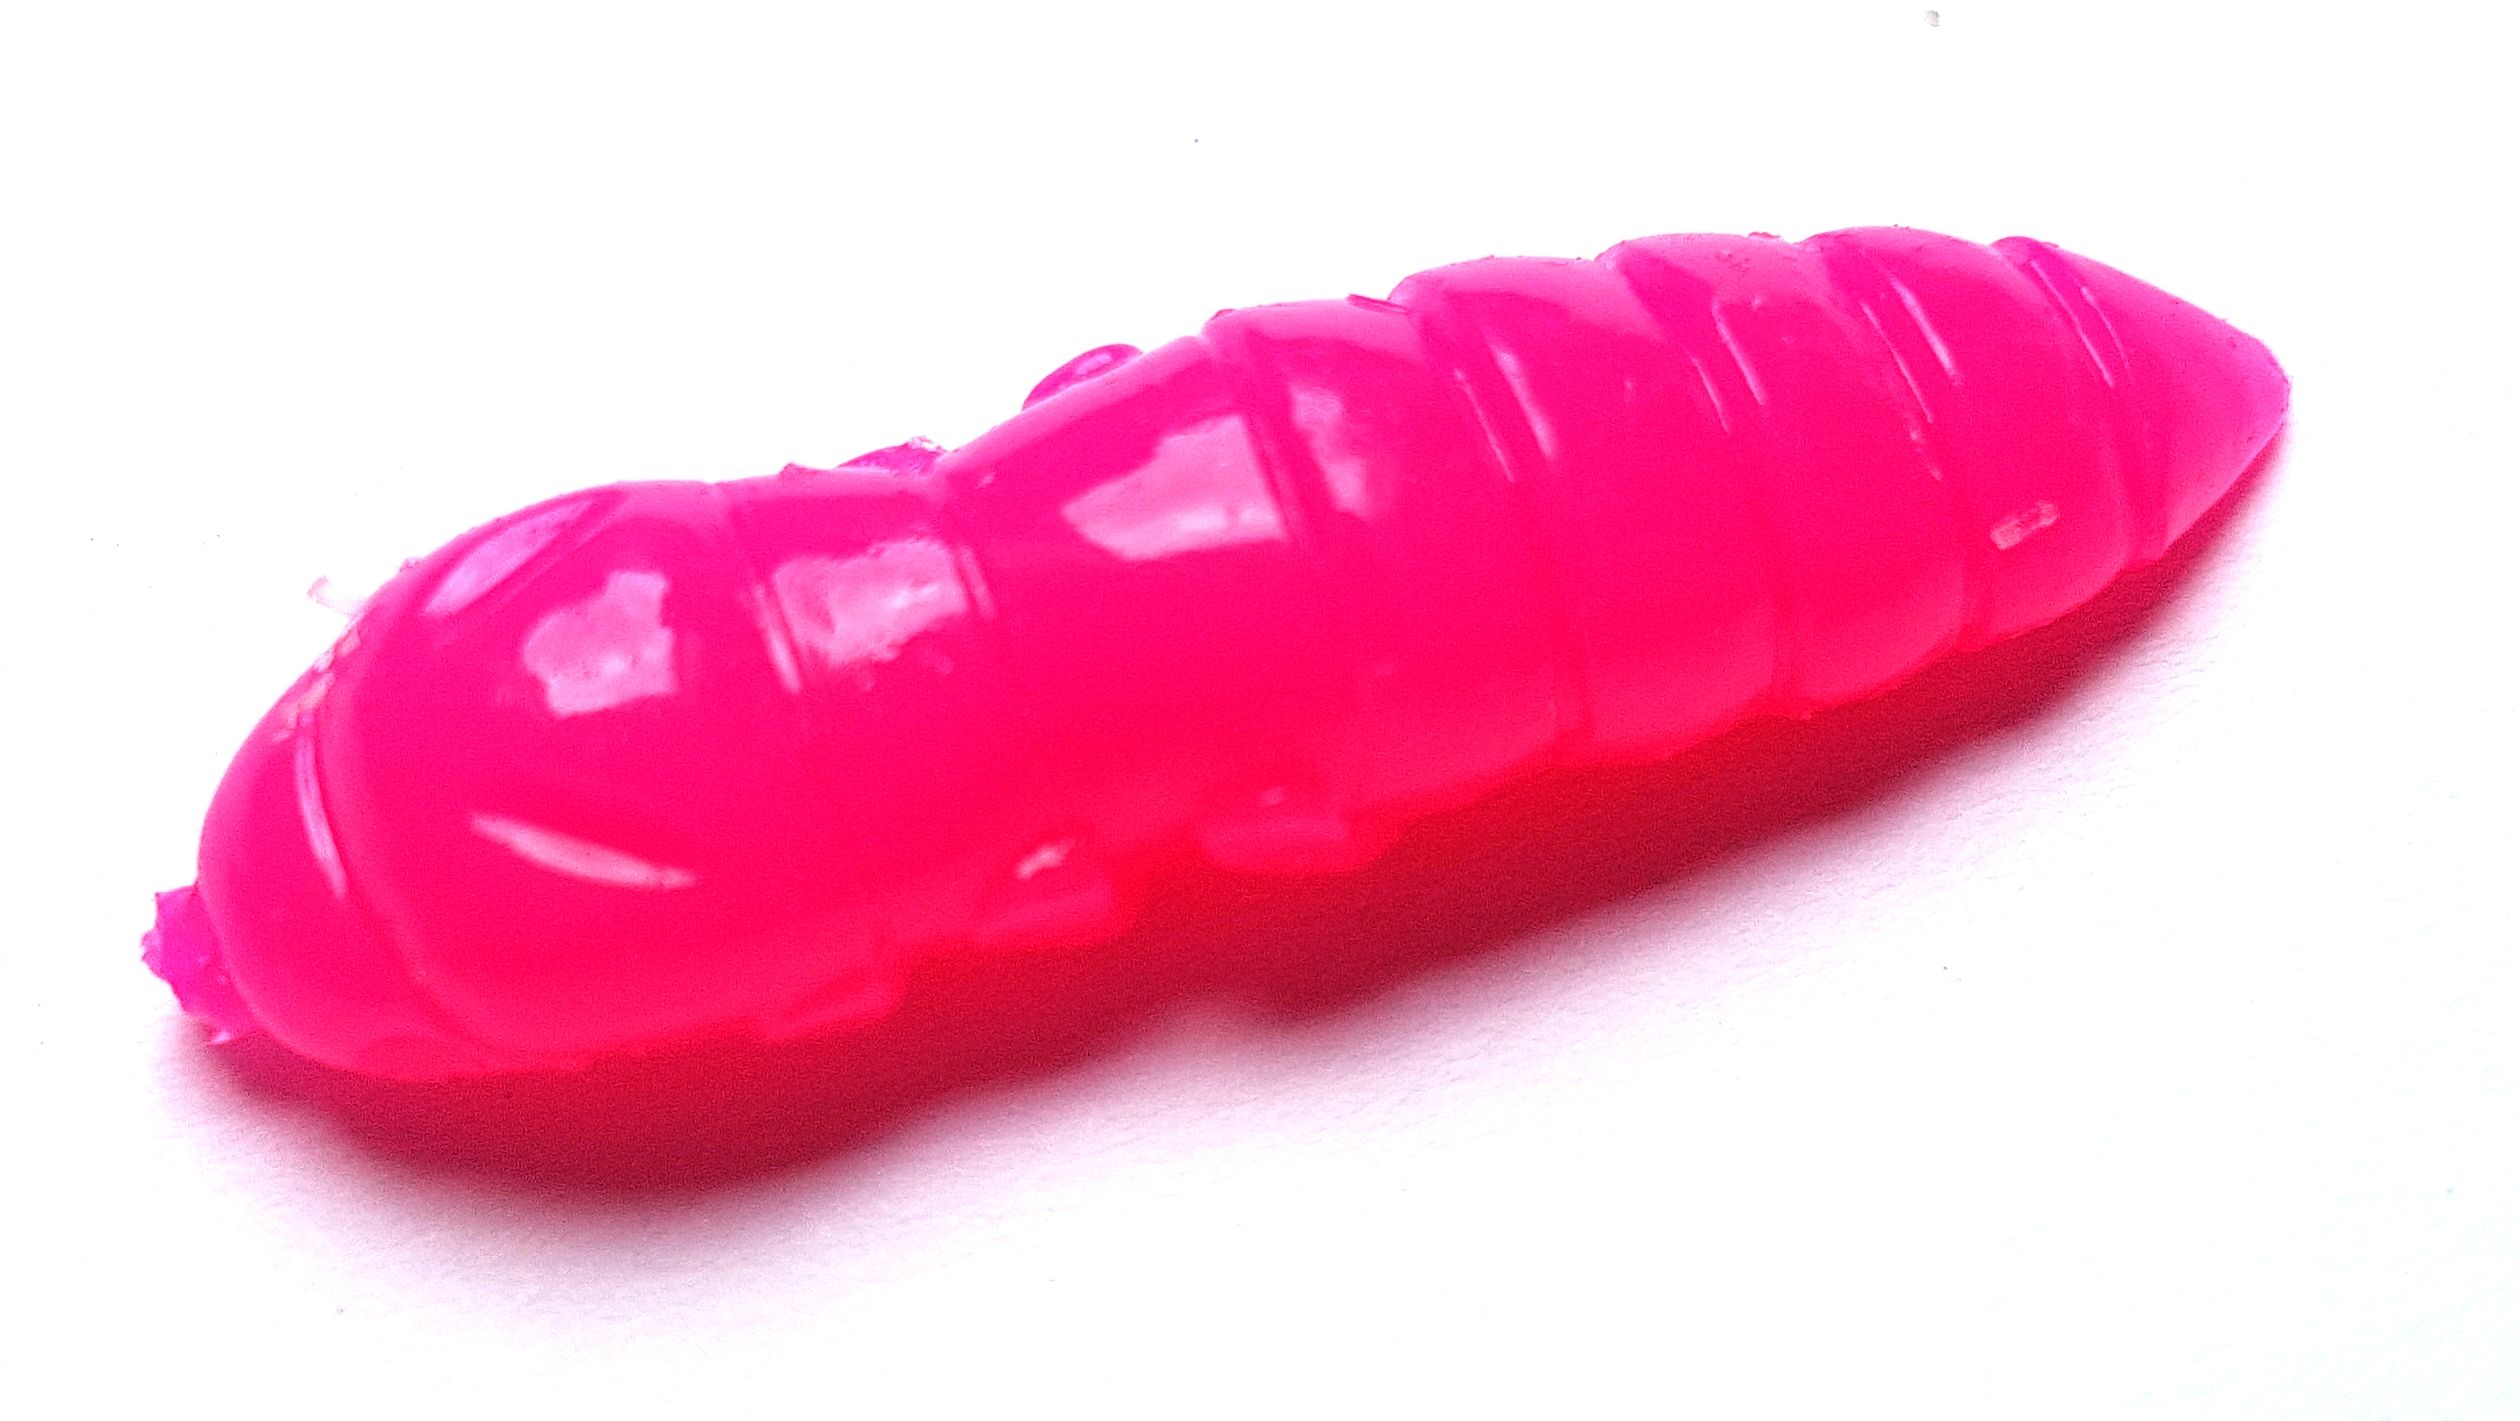 FishUp Pupa 0.9 Mit Käsearoma – Softbait Für Forelle Und Barsch In 2,3 Cm / Farbe: Hot Pink